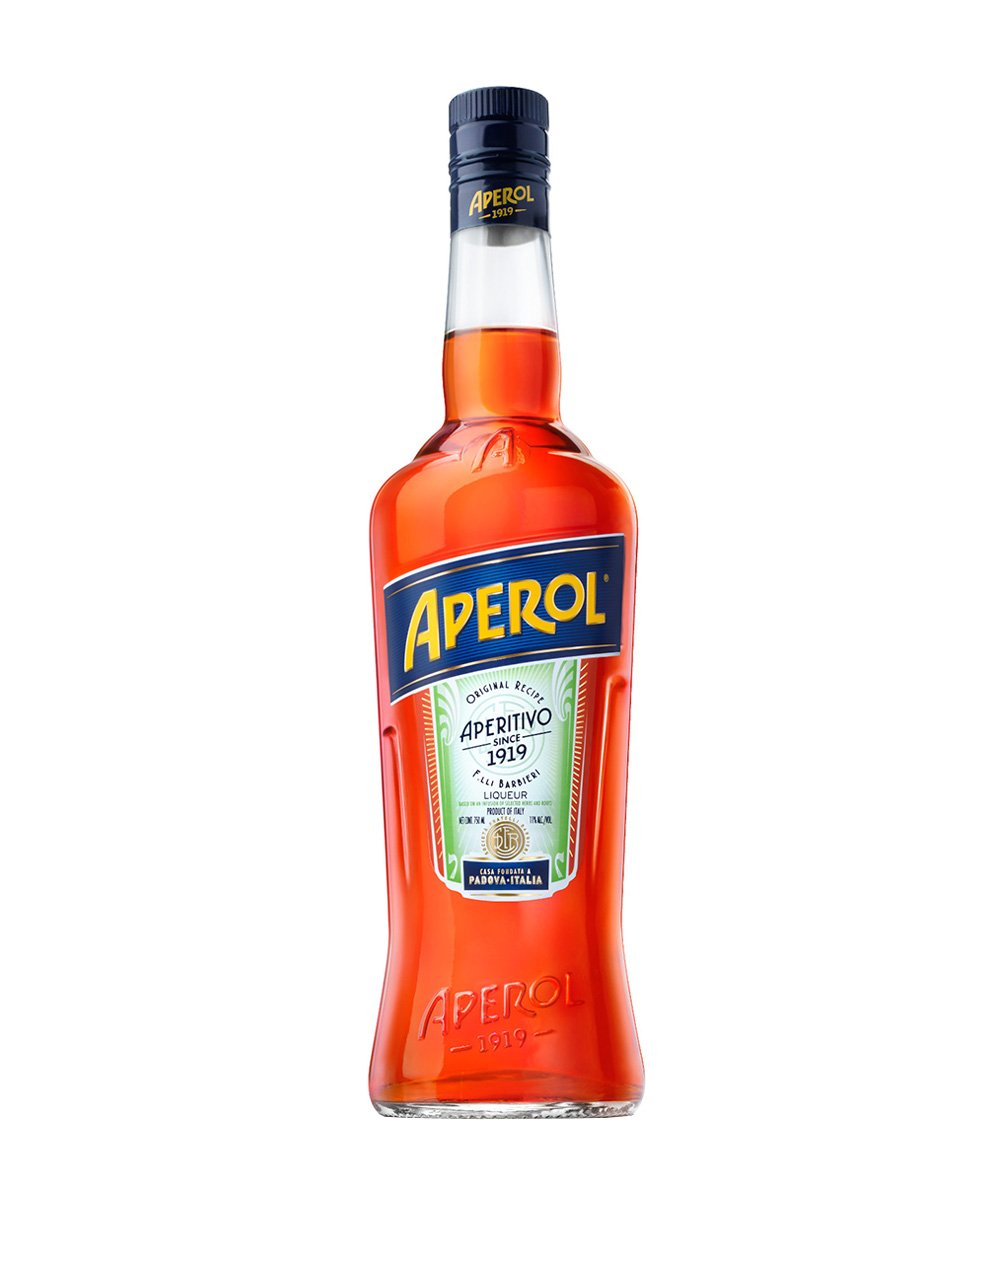 Aperol bottle